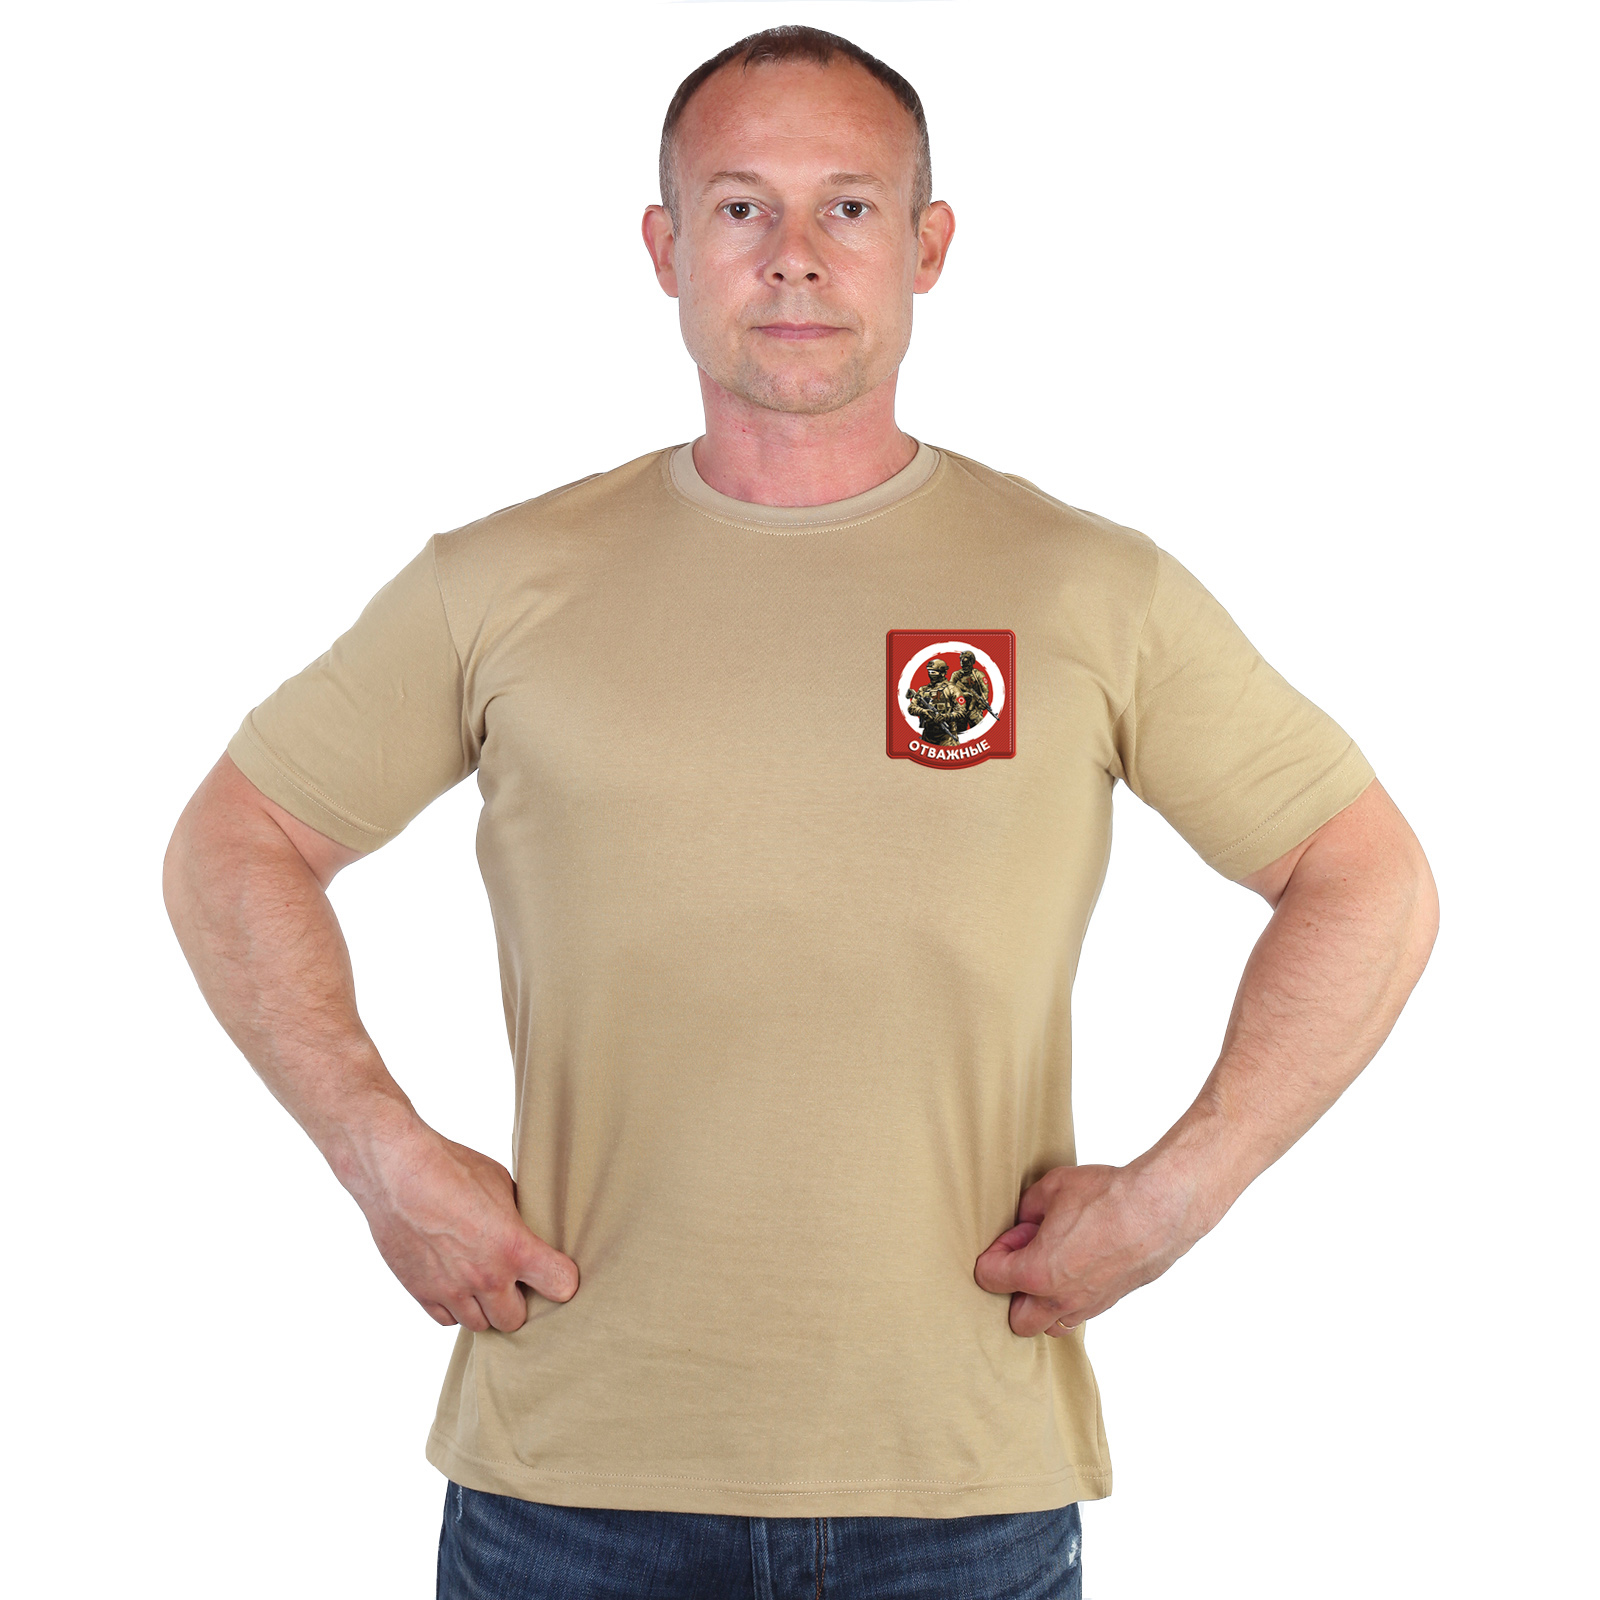 Песочная футболка с термотрансфером "Отважные"